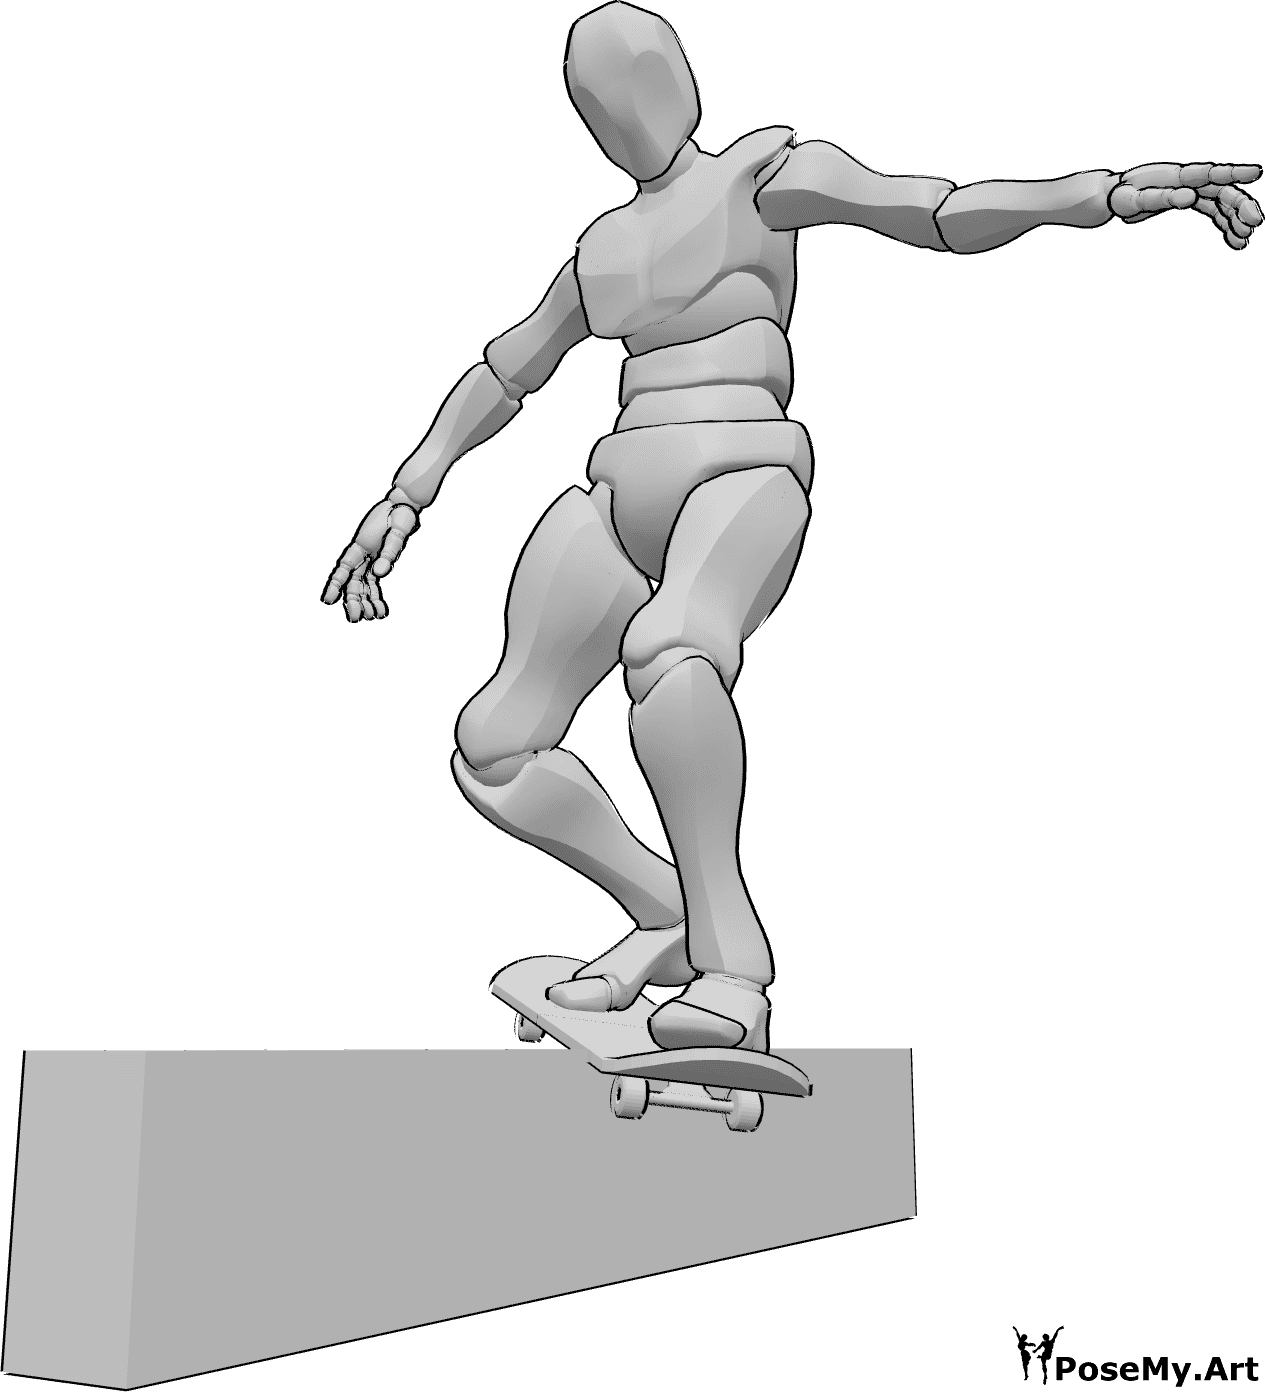 Riferimento alle pose- Posa scorrevole della ringhiera dello skateboard - Uomo scivola su una ringhiera con il suo skateboard, in equilibrio con le mani, riferimento disegno skateboard